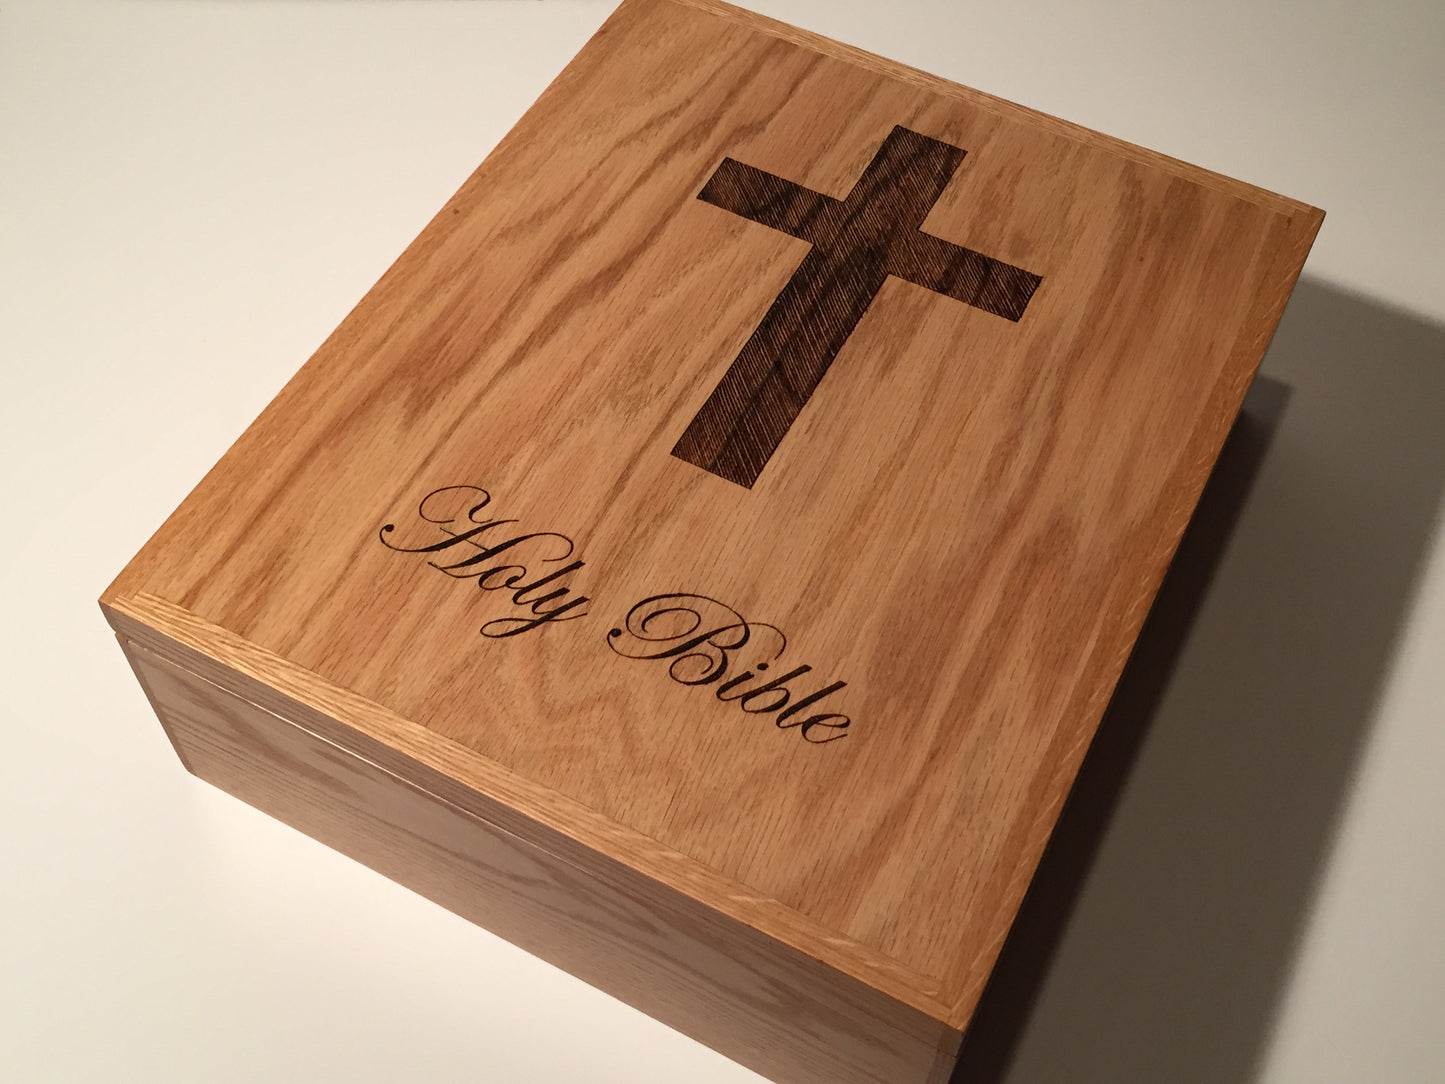 Personalized Bible box - TreeToBox